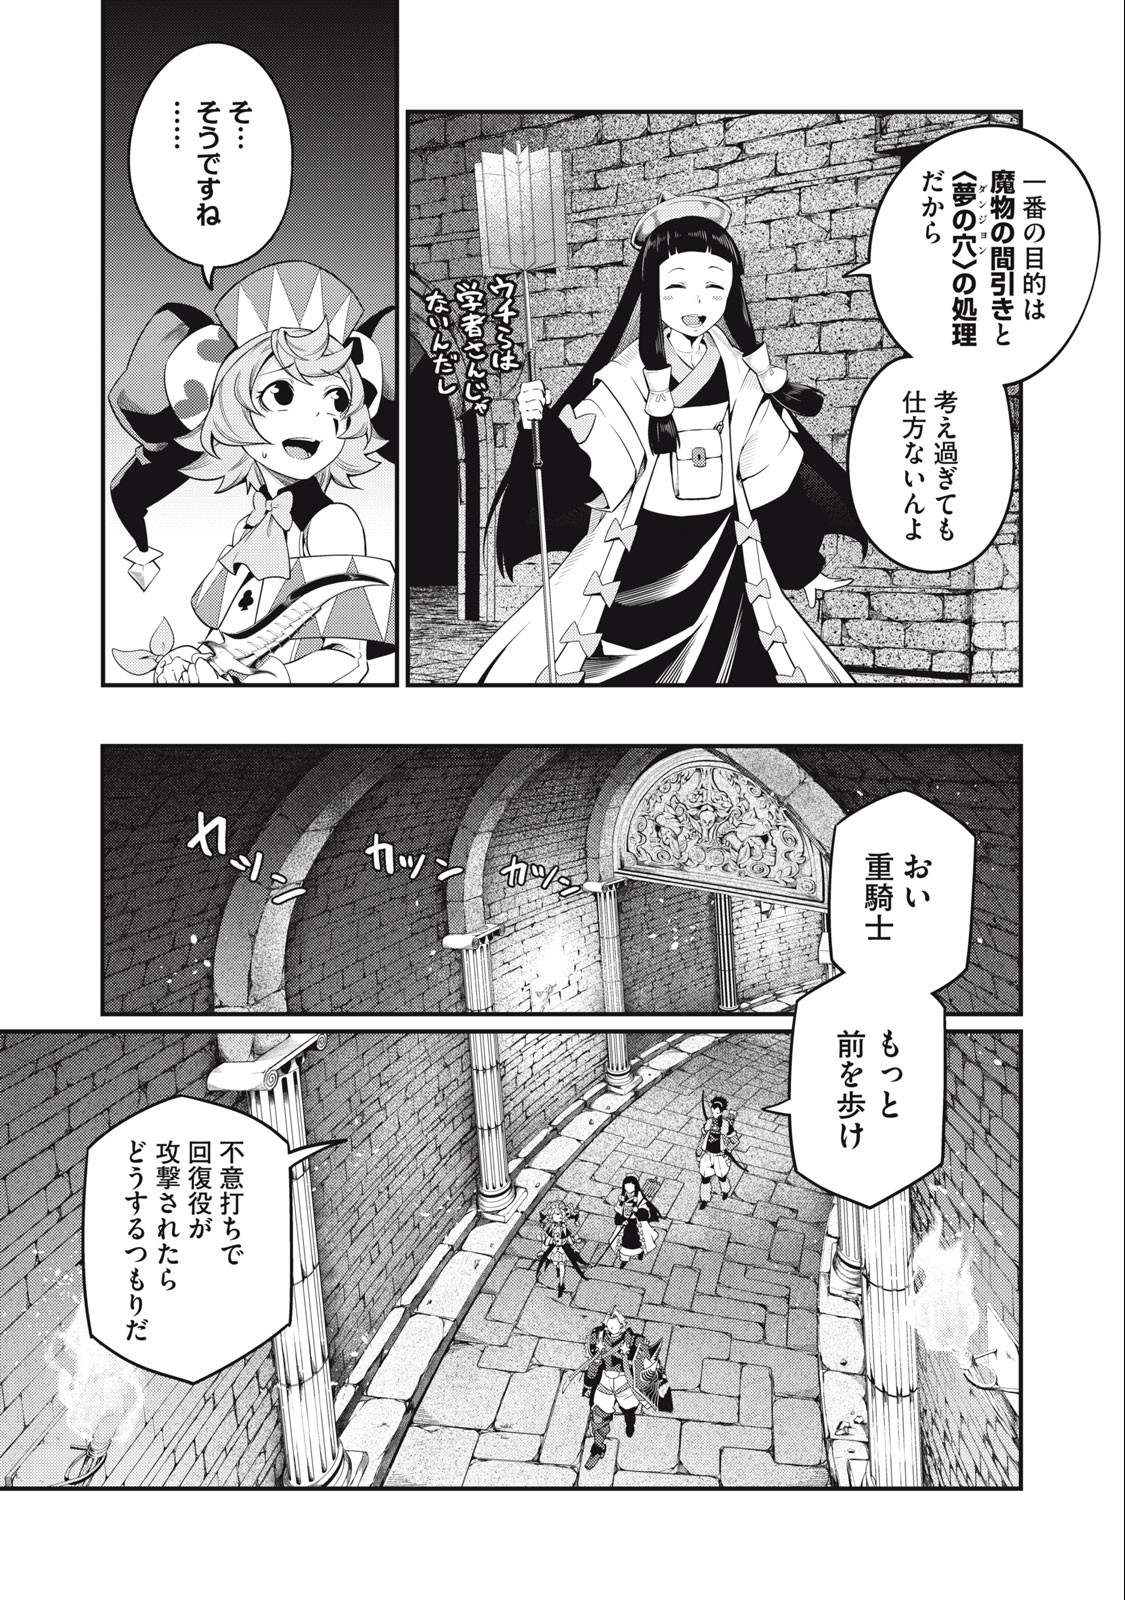 追放された転生重騎士はゲーム知識で無双する 第51話 - Page 3